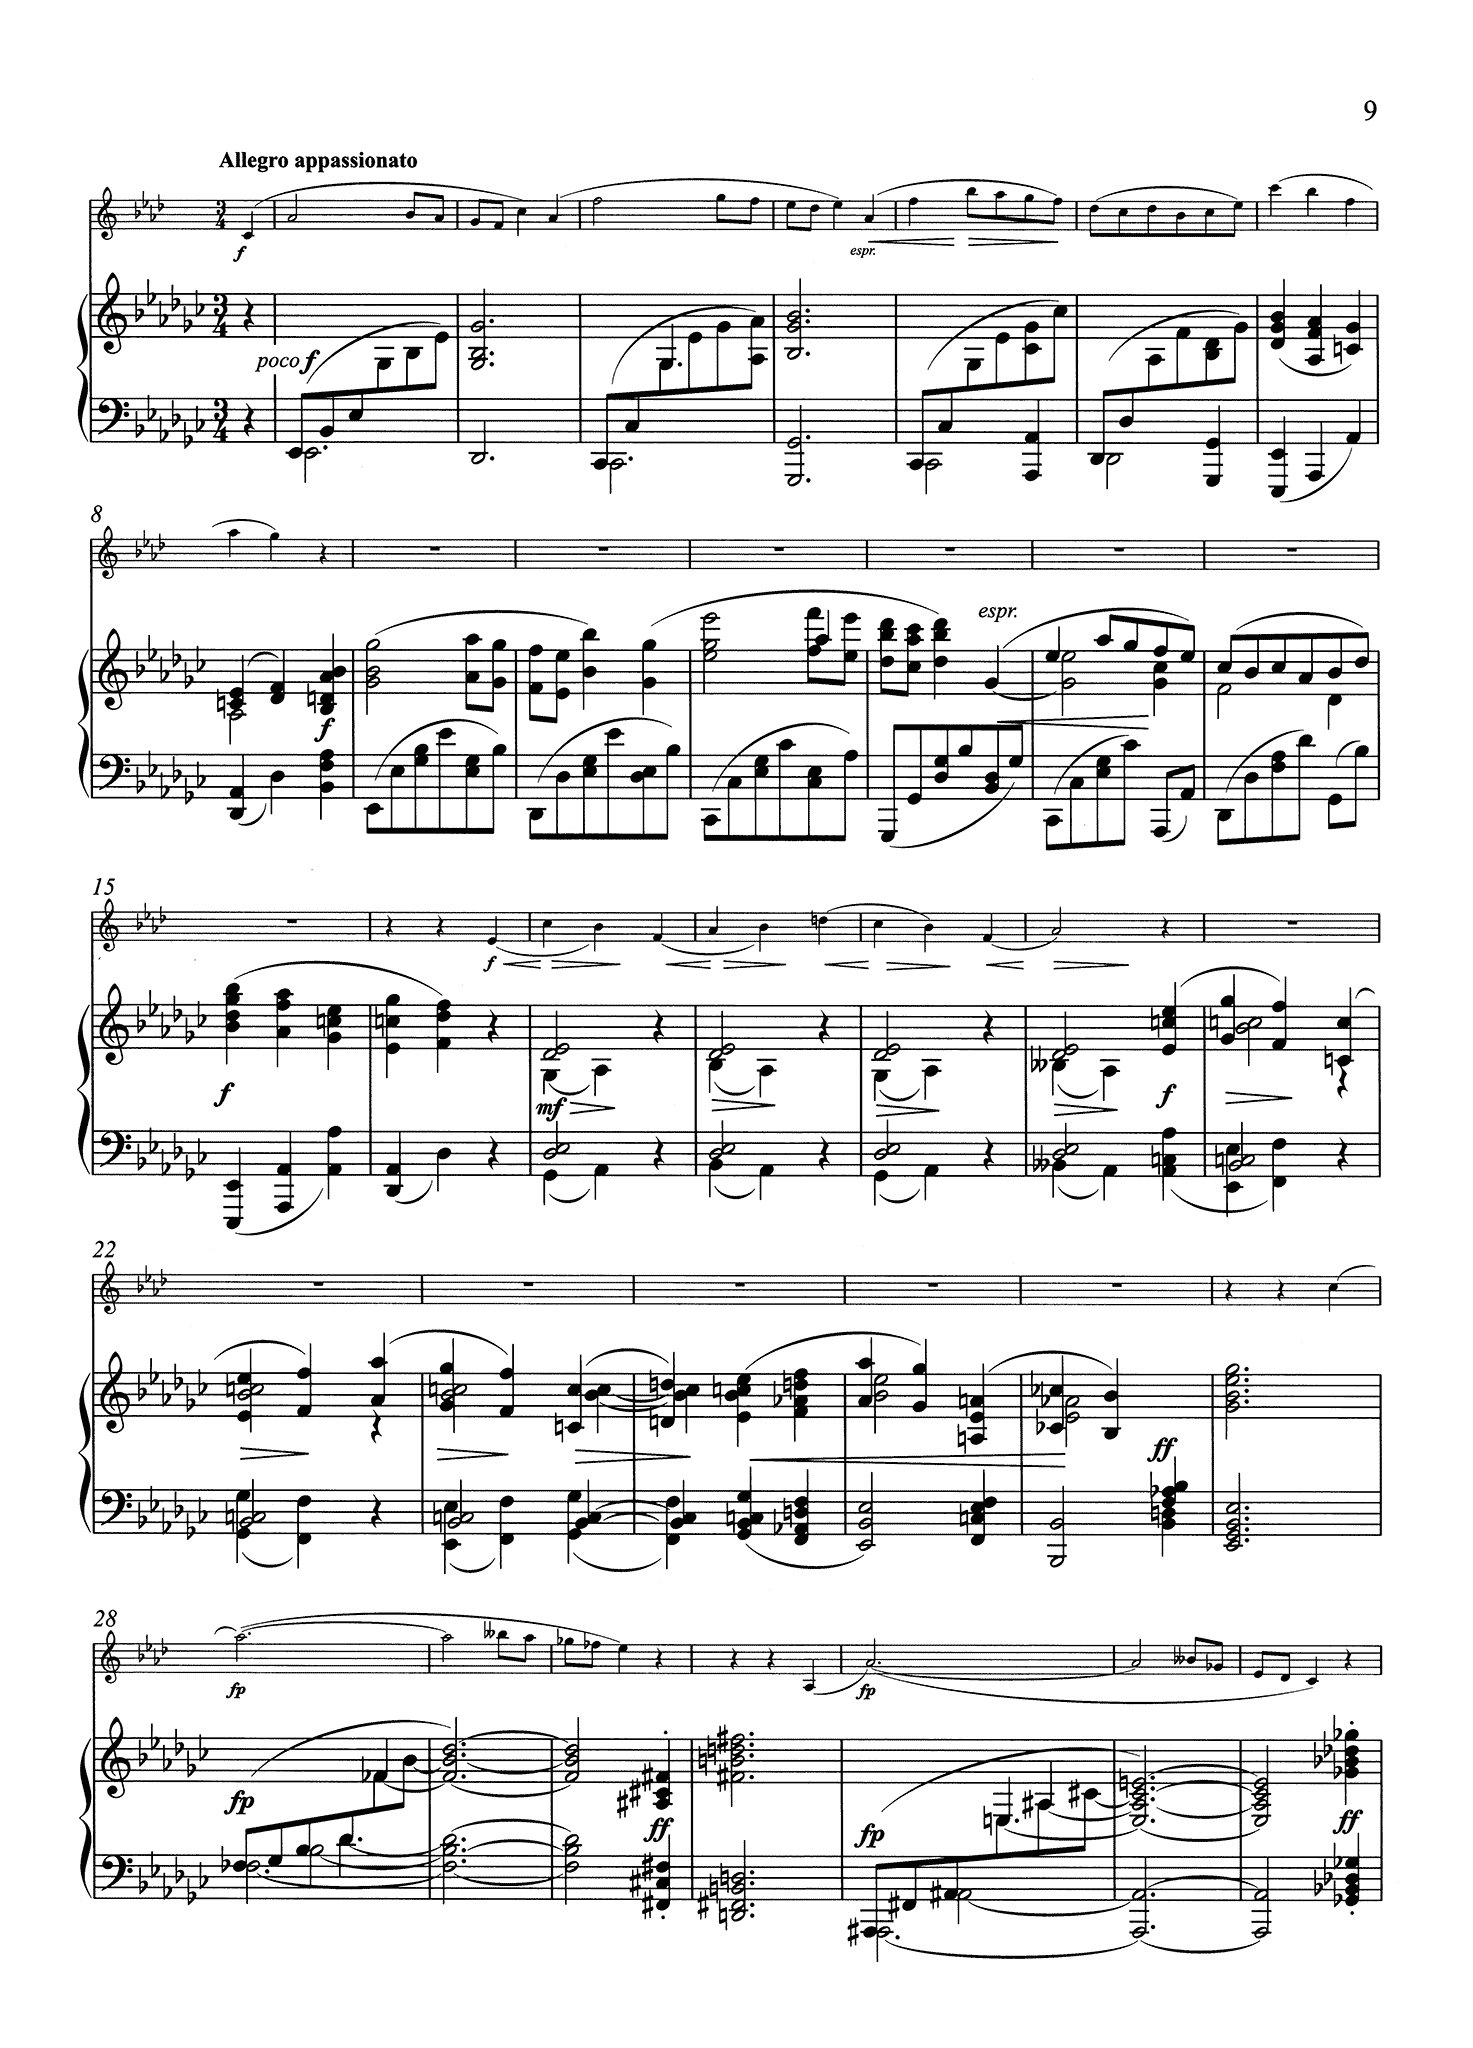 Sonata in E-flat Major, Op. 120 No. 2 - Piano Score Movement 2